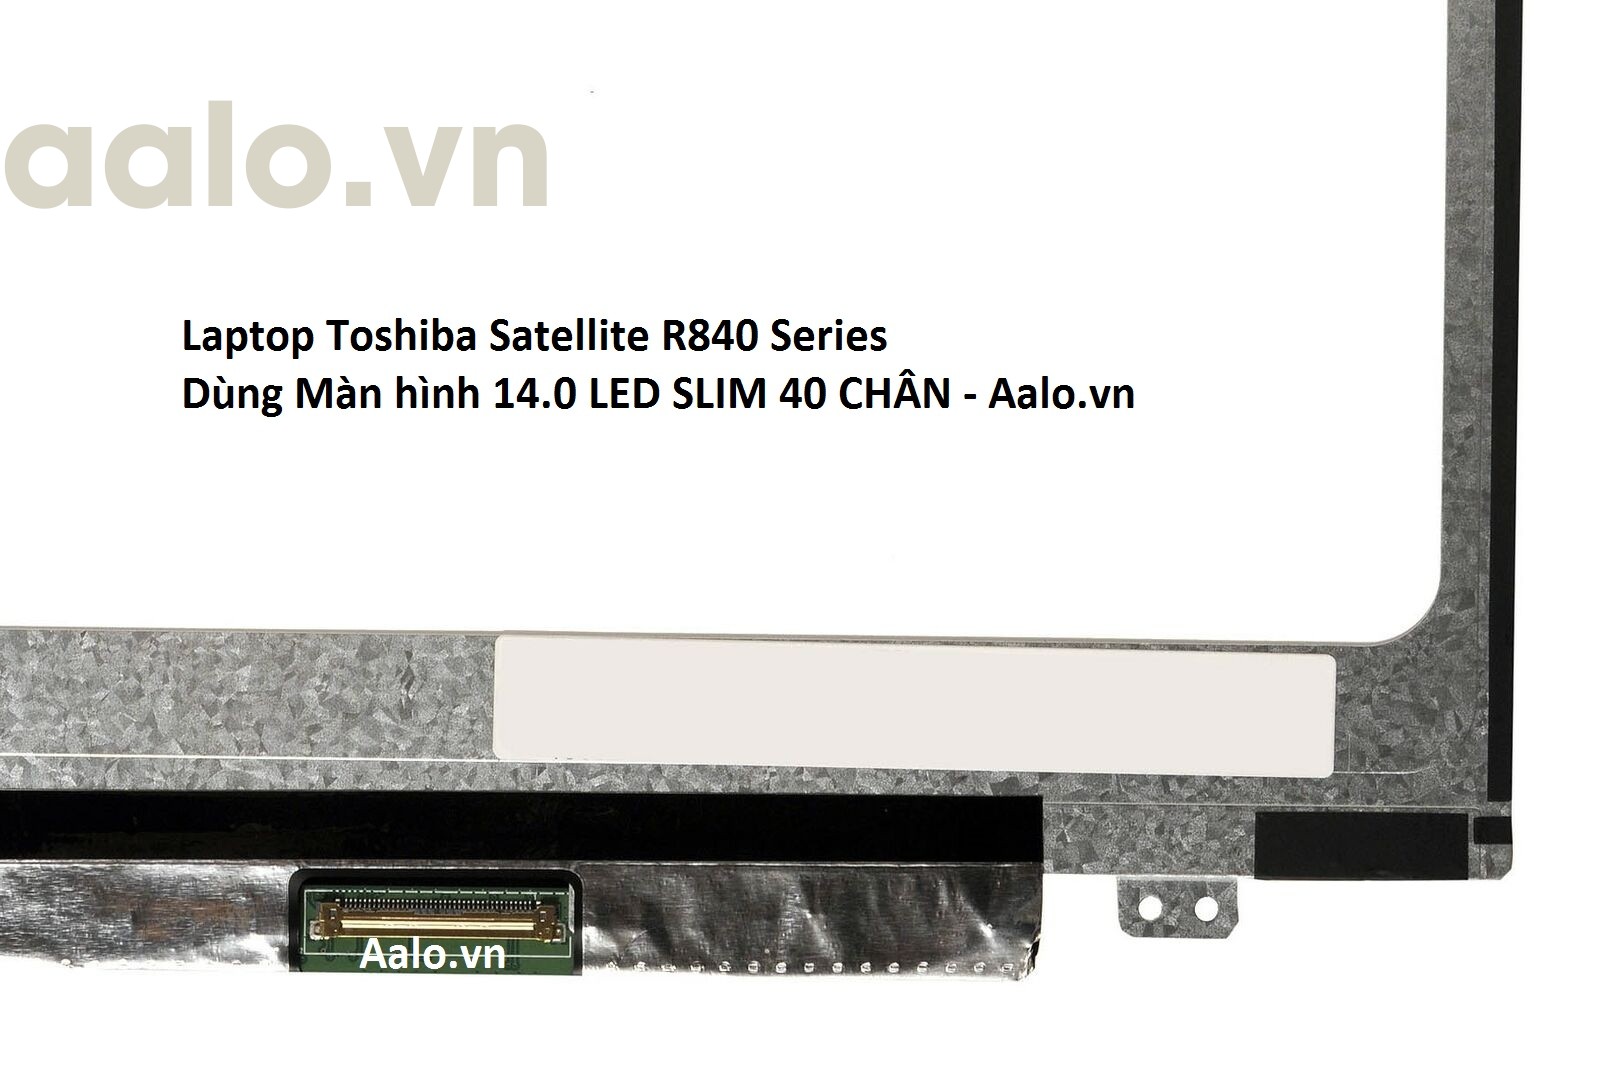 Màn hình Laptop Toshiba Satellite R840 Series